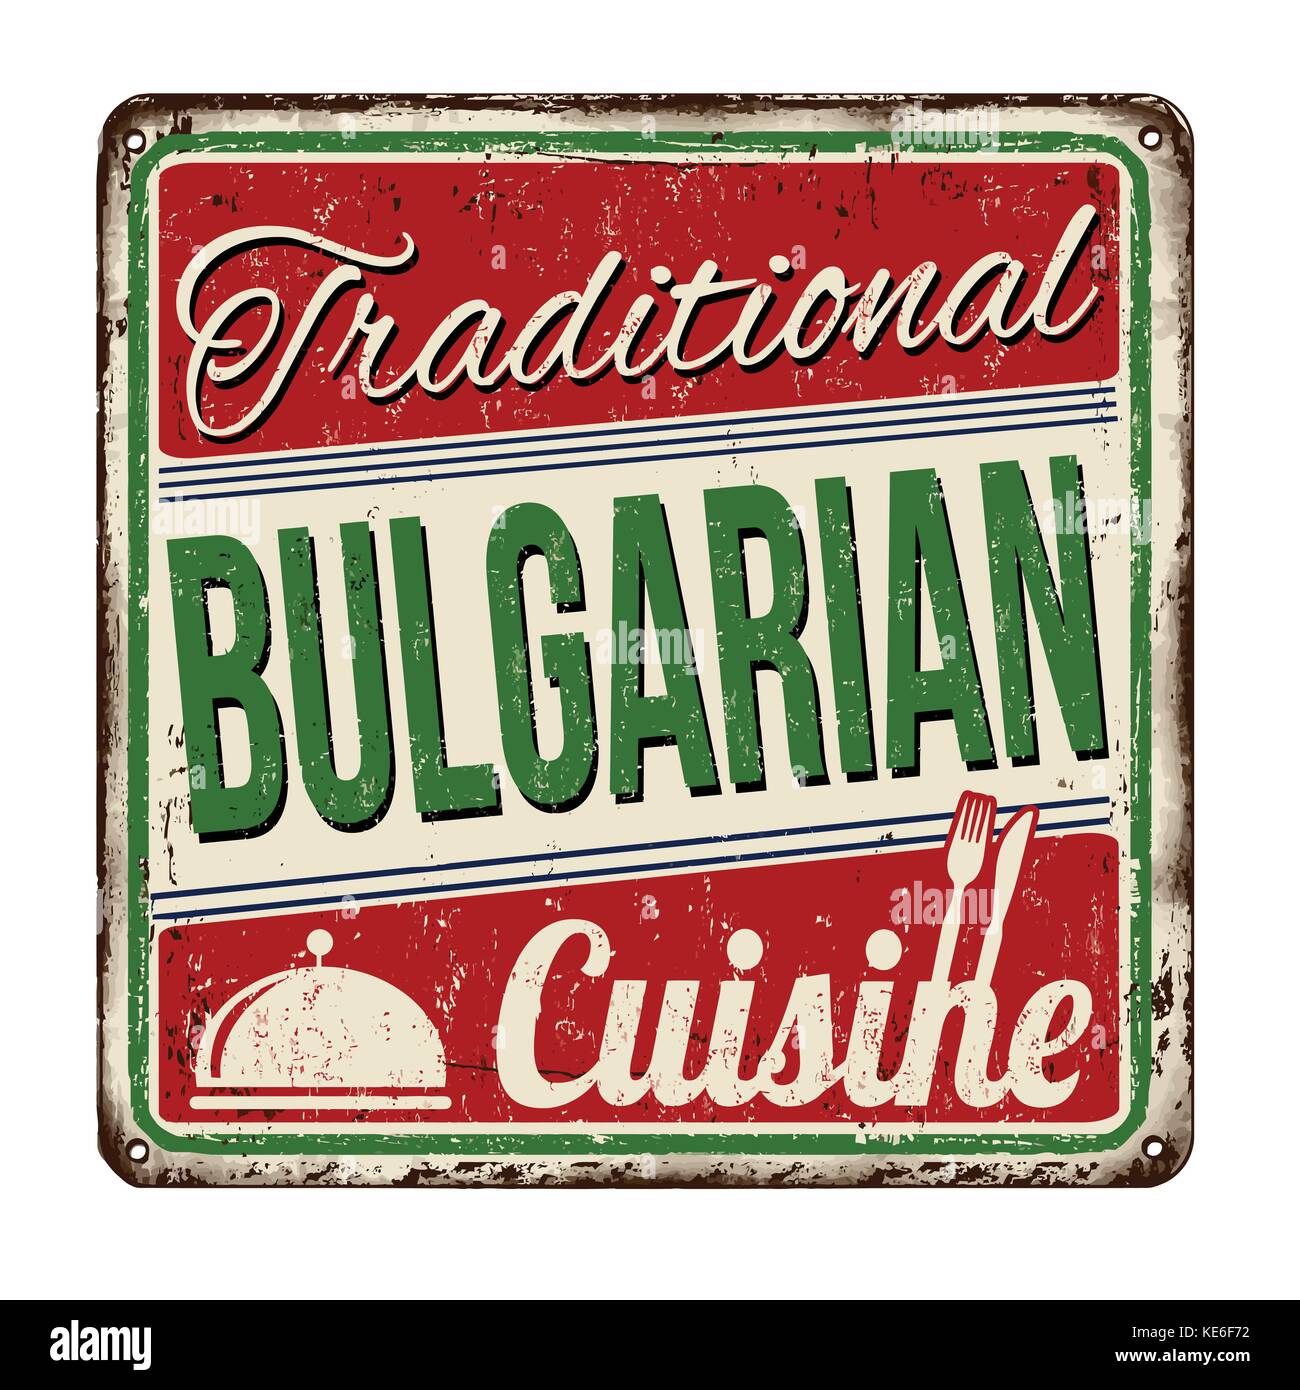 Traditionelle bulgarische Küche vintage rostiges Metall Zeichen auf weißem Hintergrund, Vector Illustration Stock Vektor